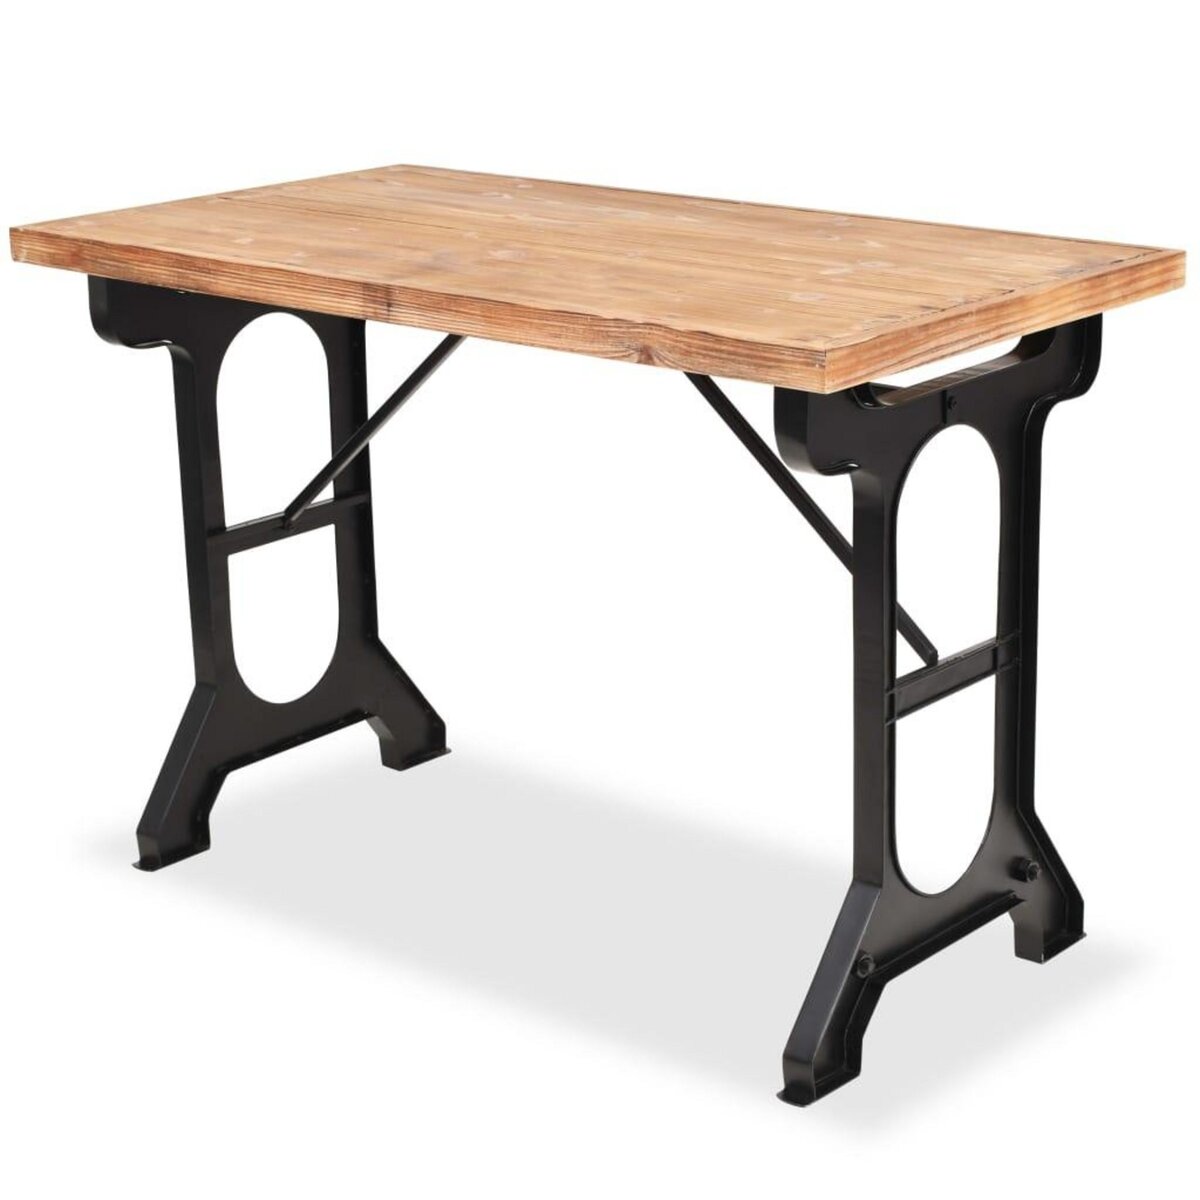 VIDAXL Table de salle a manger Sapin massif Dessus de table en bois